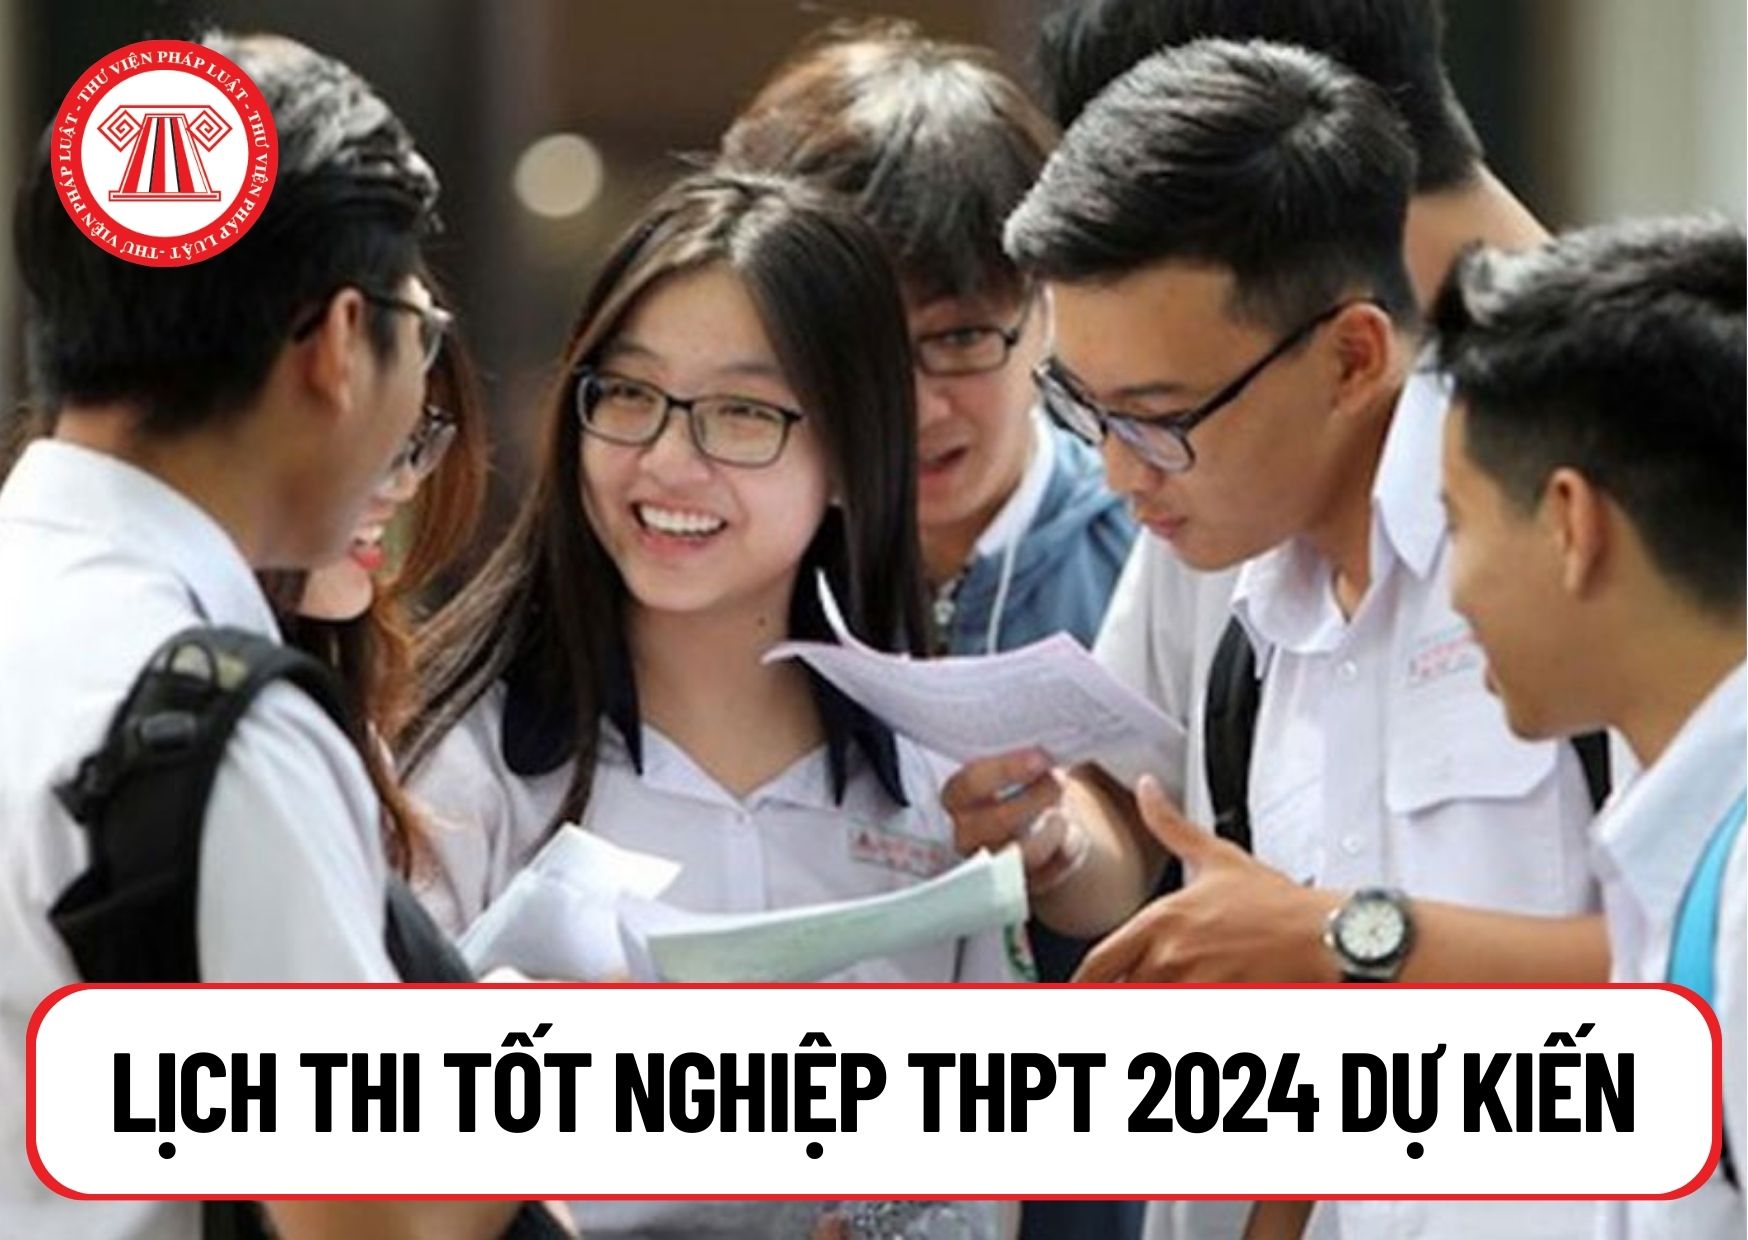 Lịch thi tốt nghiệp THPT 2024 dự kiến vào ngày 21, 22/6 đúng không? Bài thi tốt nghiệp THPT 2024 gồm những môn học nào?